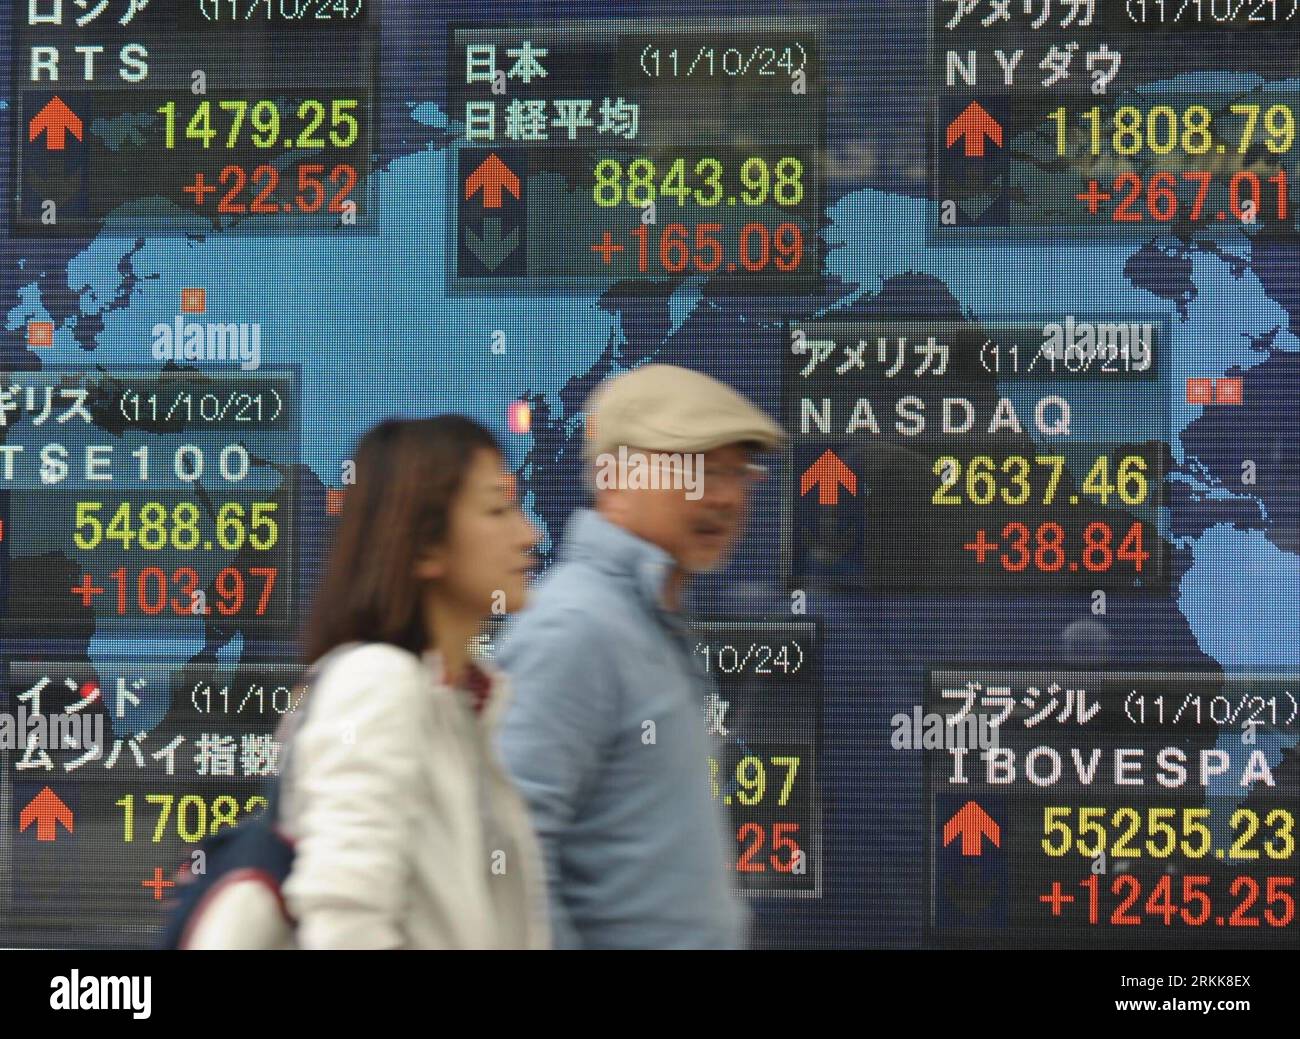 Bildnummer : 56210962 Datum : 24.10.2011 Copyright : imago/Xinhua (111024) -- TOKYO, 24 octobre 2011 (Xinhua) -- des piétons marchent devant un index boursier devant une maison de courtage à Tokyo le 24 octobre 2011. Les actions japonaises ont fortement augmenté lundi. La moyenne des actions Nikkei sur 225 émissions a atteint 165,09 points, soit 1. 90 pour cent, à partir de vendredi à 8 843,98. L'indice TOPIx plus large de toutes les émissions de la première Section à la Bourse de Tokyo a terminé en hausse de 11,23 points, soit 1,51% à 755,44. (Xinhua/Kenichiro Seki) (zys) JAPAN-TOKYO-STOCKS PUBLICATIONxNOTxINxCHN Wirtschaft Börse Aktienindex Börsenkurse Anstieg Haus Banque D'Images